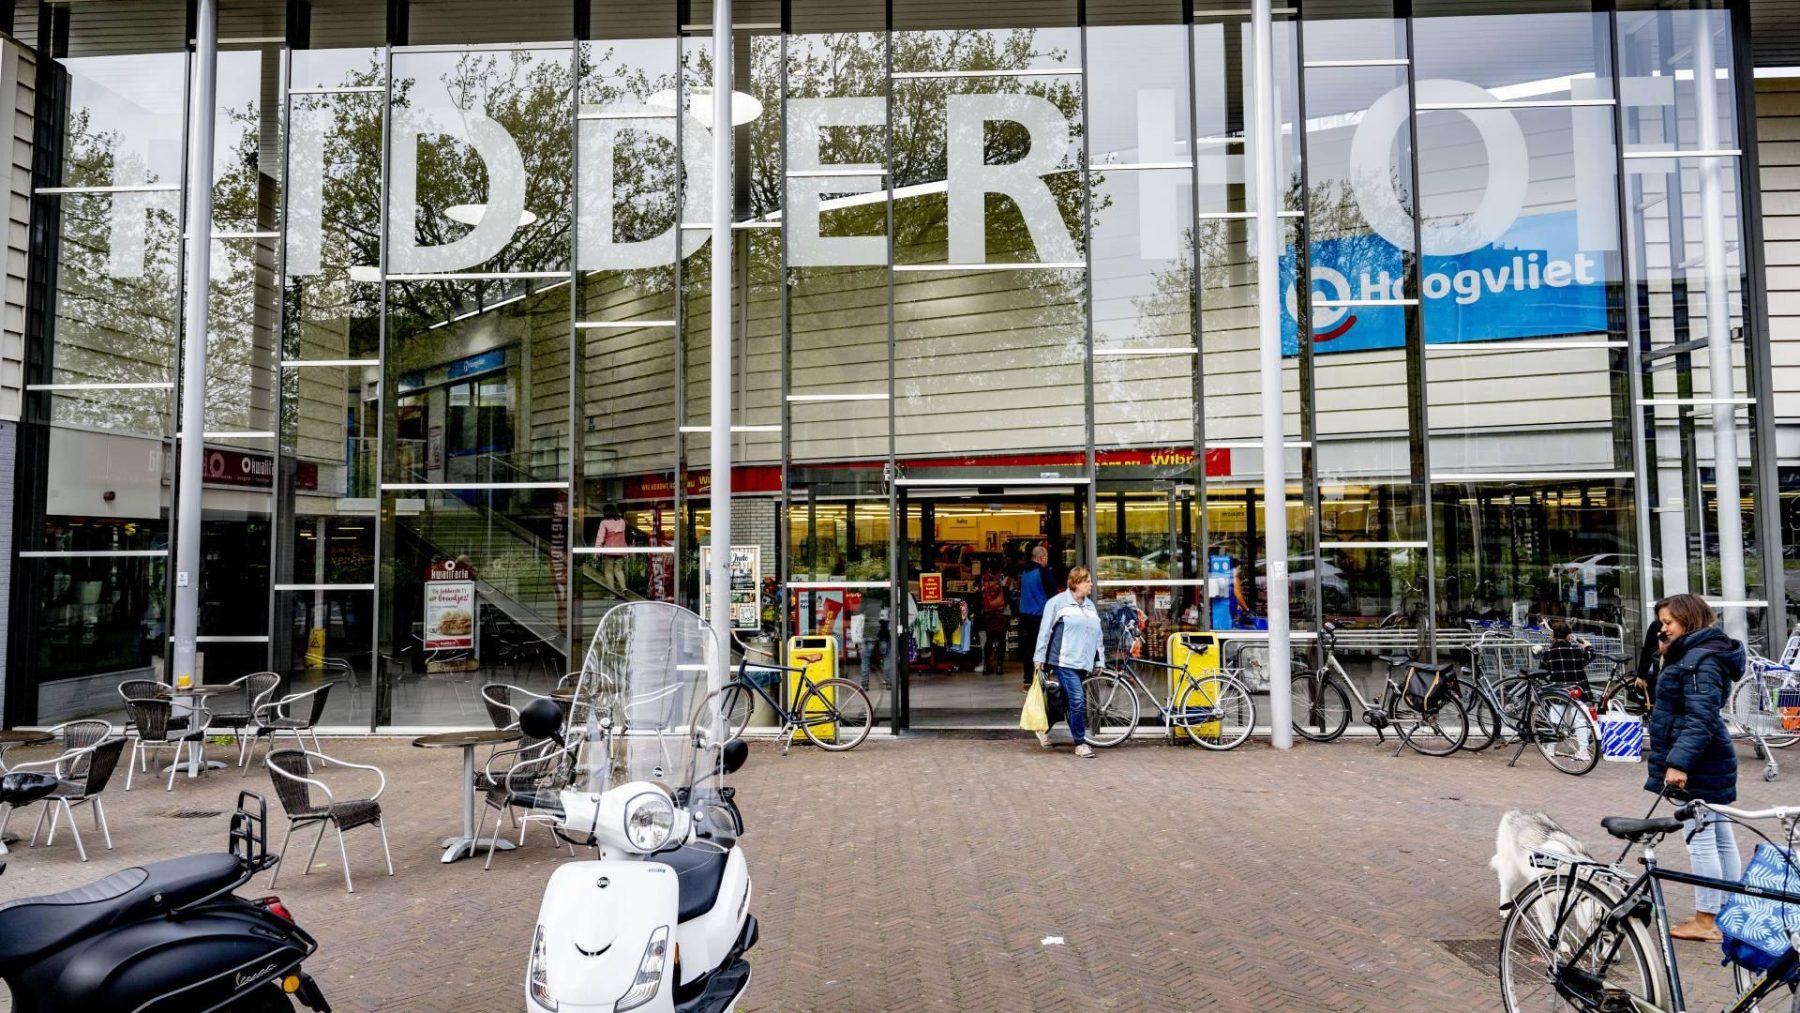 Winkelcentrum De Ridderhof Niets verdachts gevonden bij winkelcentrum De Ridderhof in Alphen